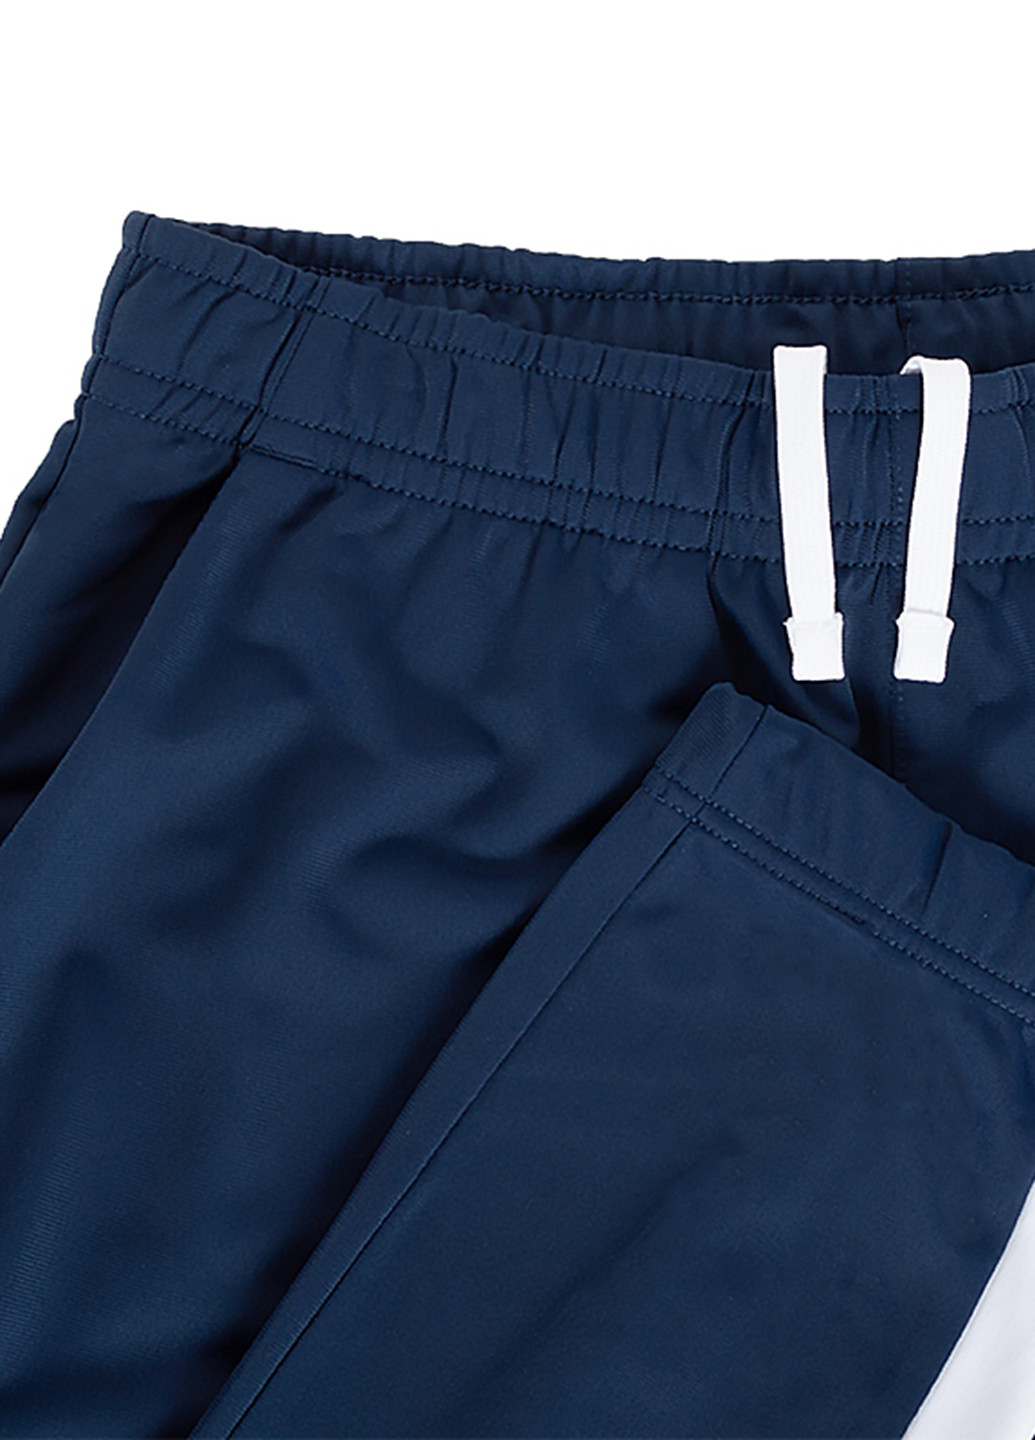 Темно-синий демисезонный костюм (толстовка, брюки) брючный Nike M NSW CE TRK SUIT PK